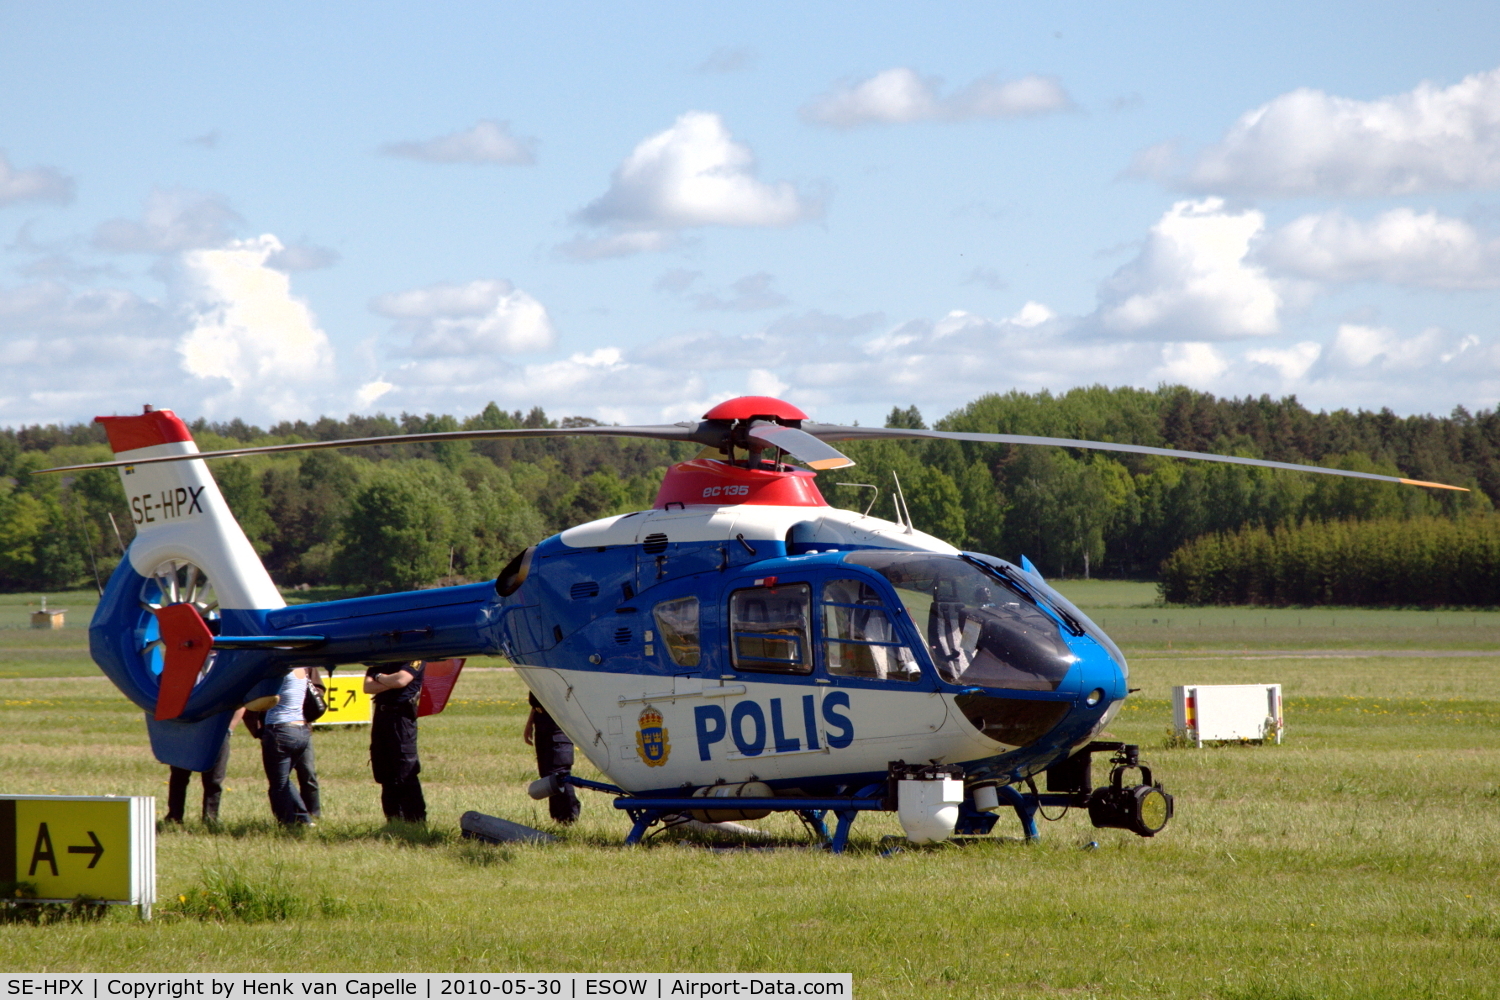 SE-HPX, 2002 Eurocopter EC-135P-2+ C/N 0240, A police EC135 parked in the grass at Västerås Hässlö airport, Sweden.